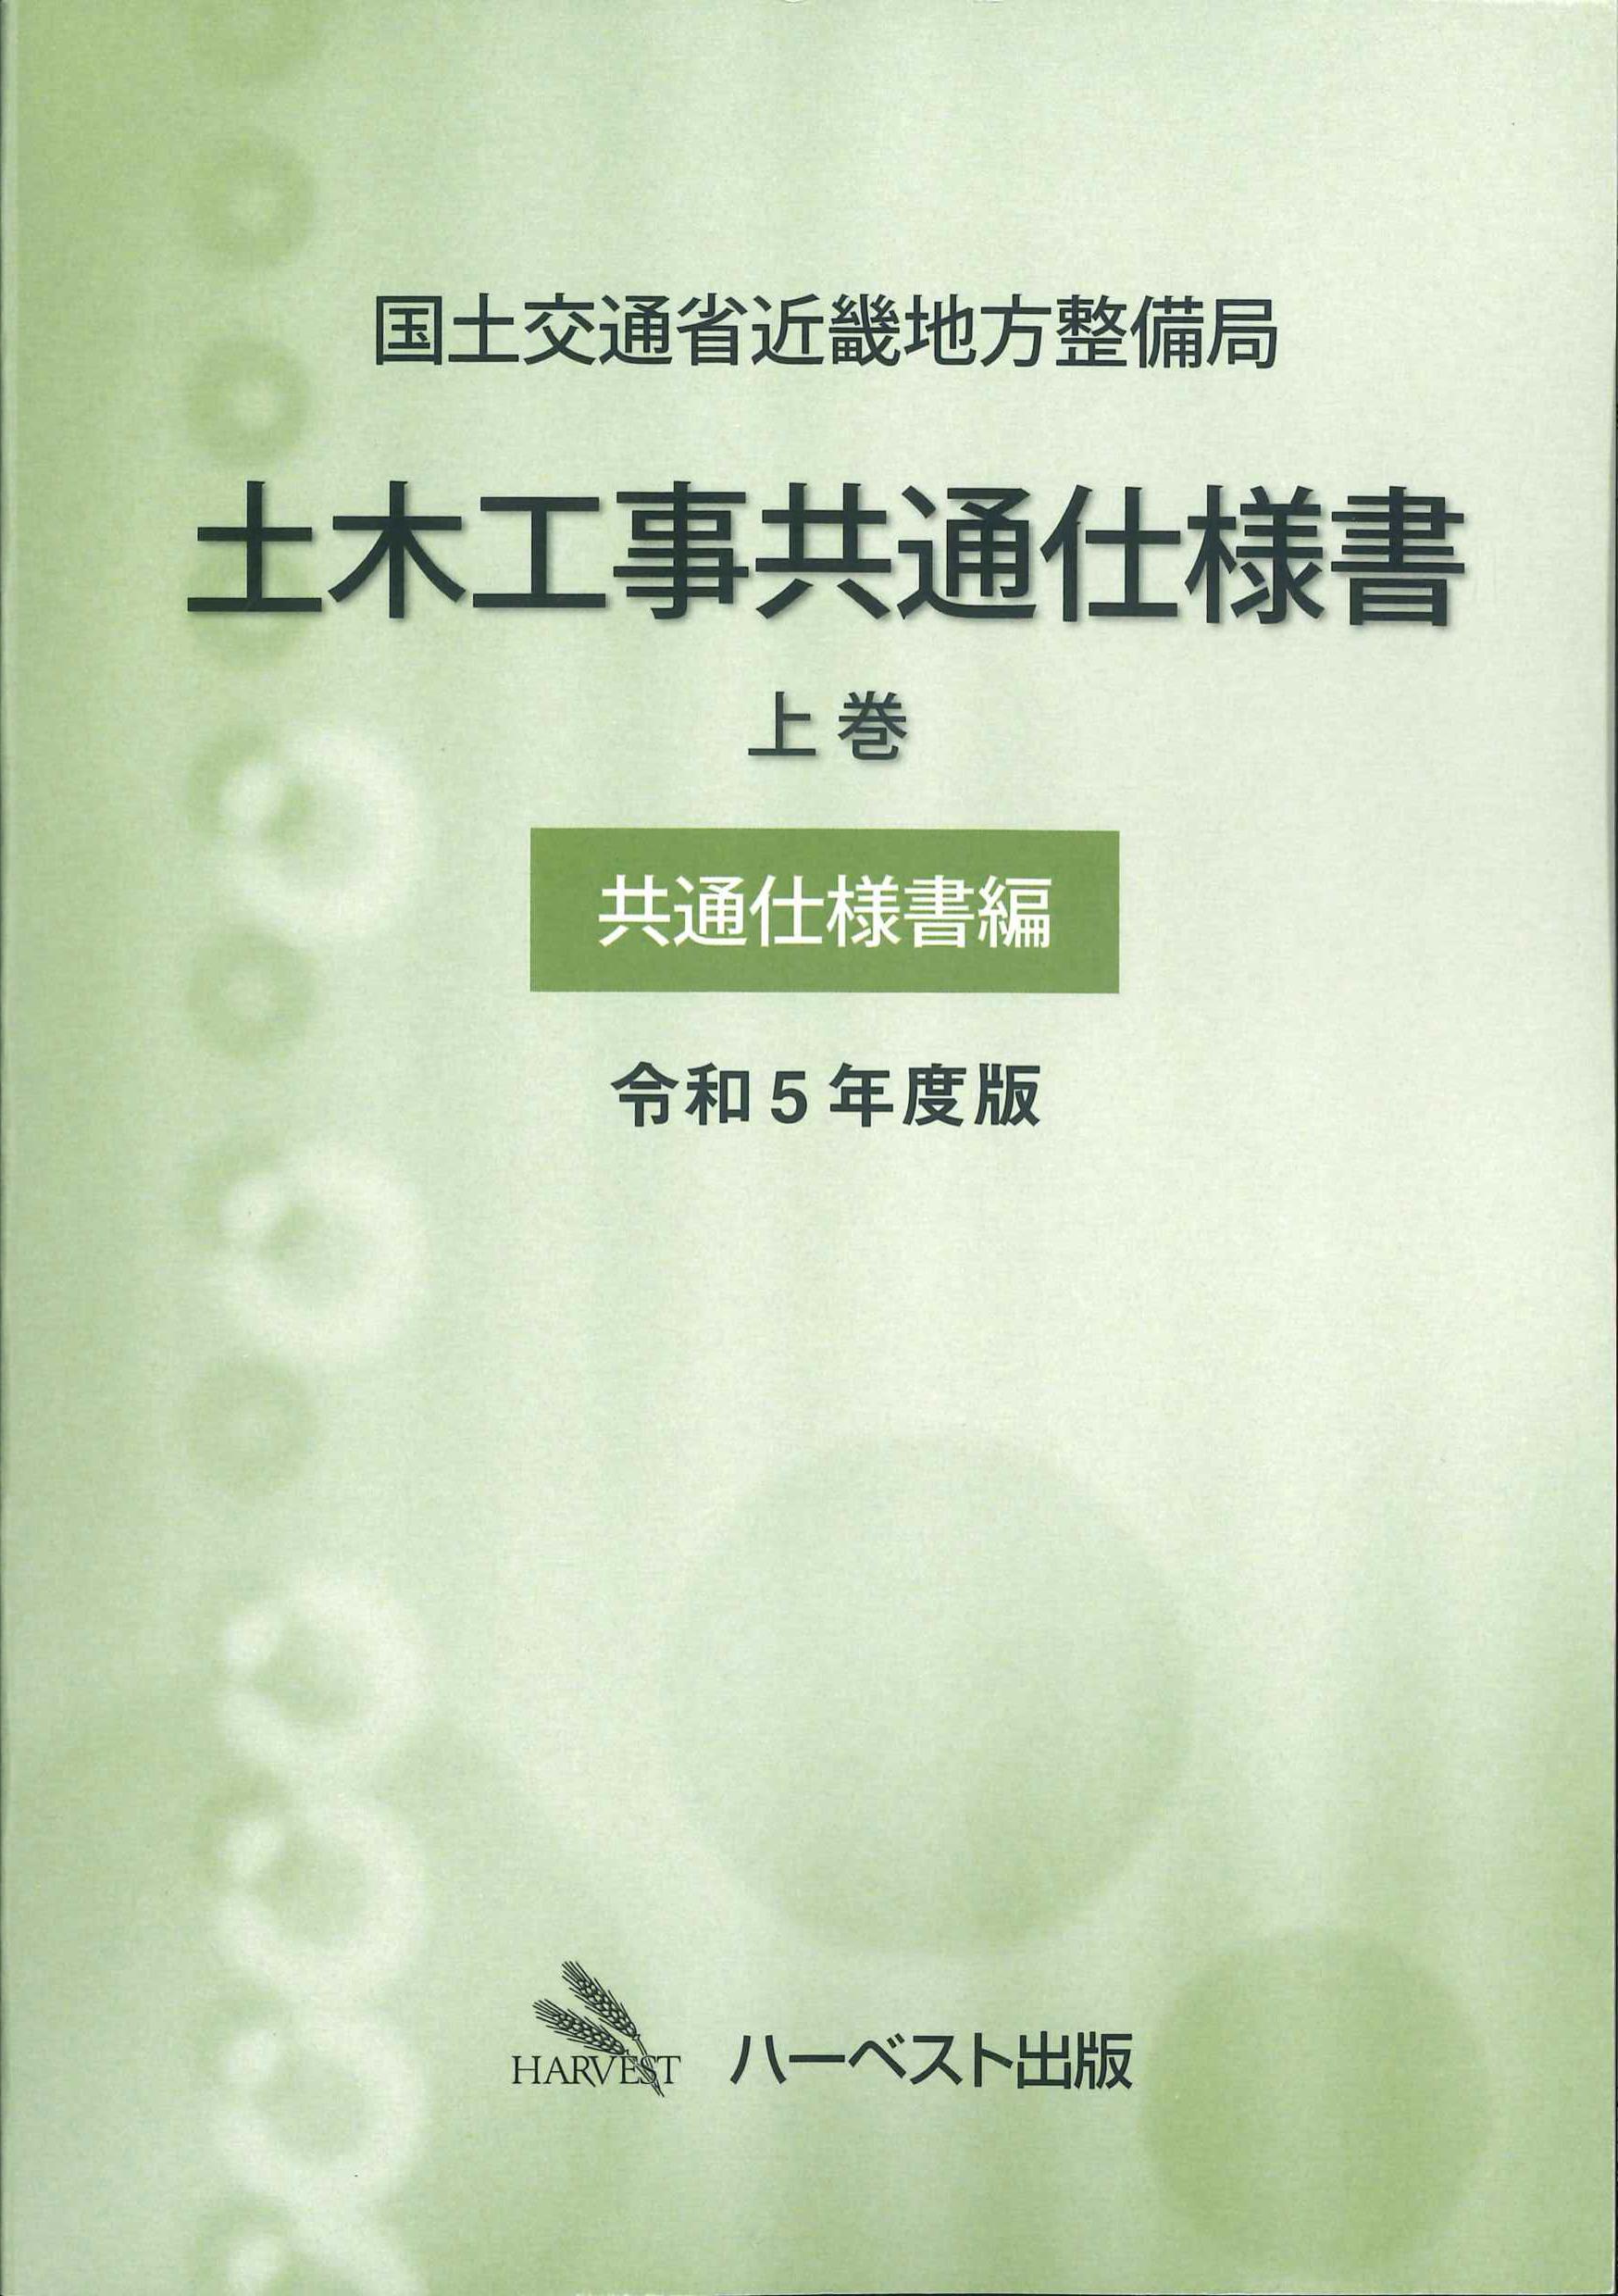 国土交通省近畿地方整備局 土木工事共通仕様書　上巻　共通仕様書編　令和5年度版